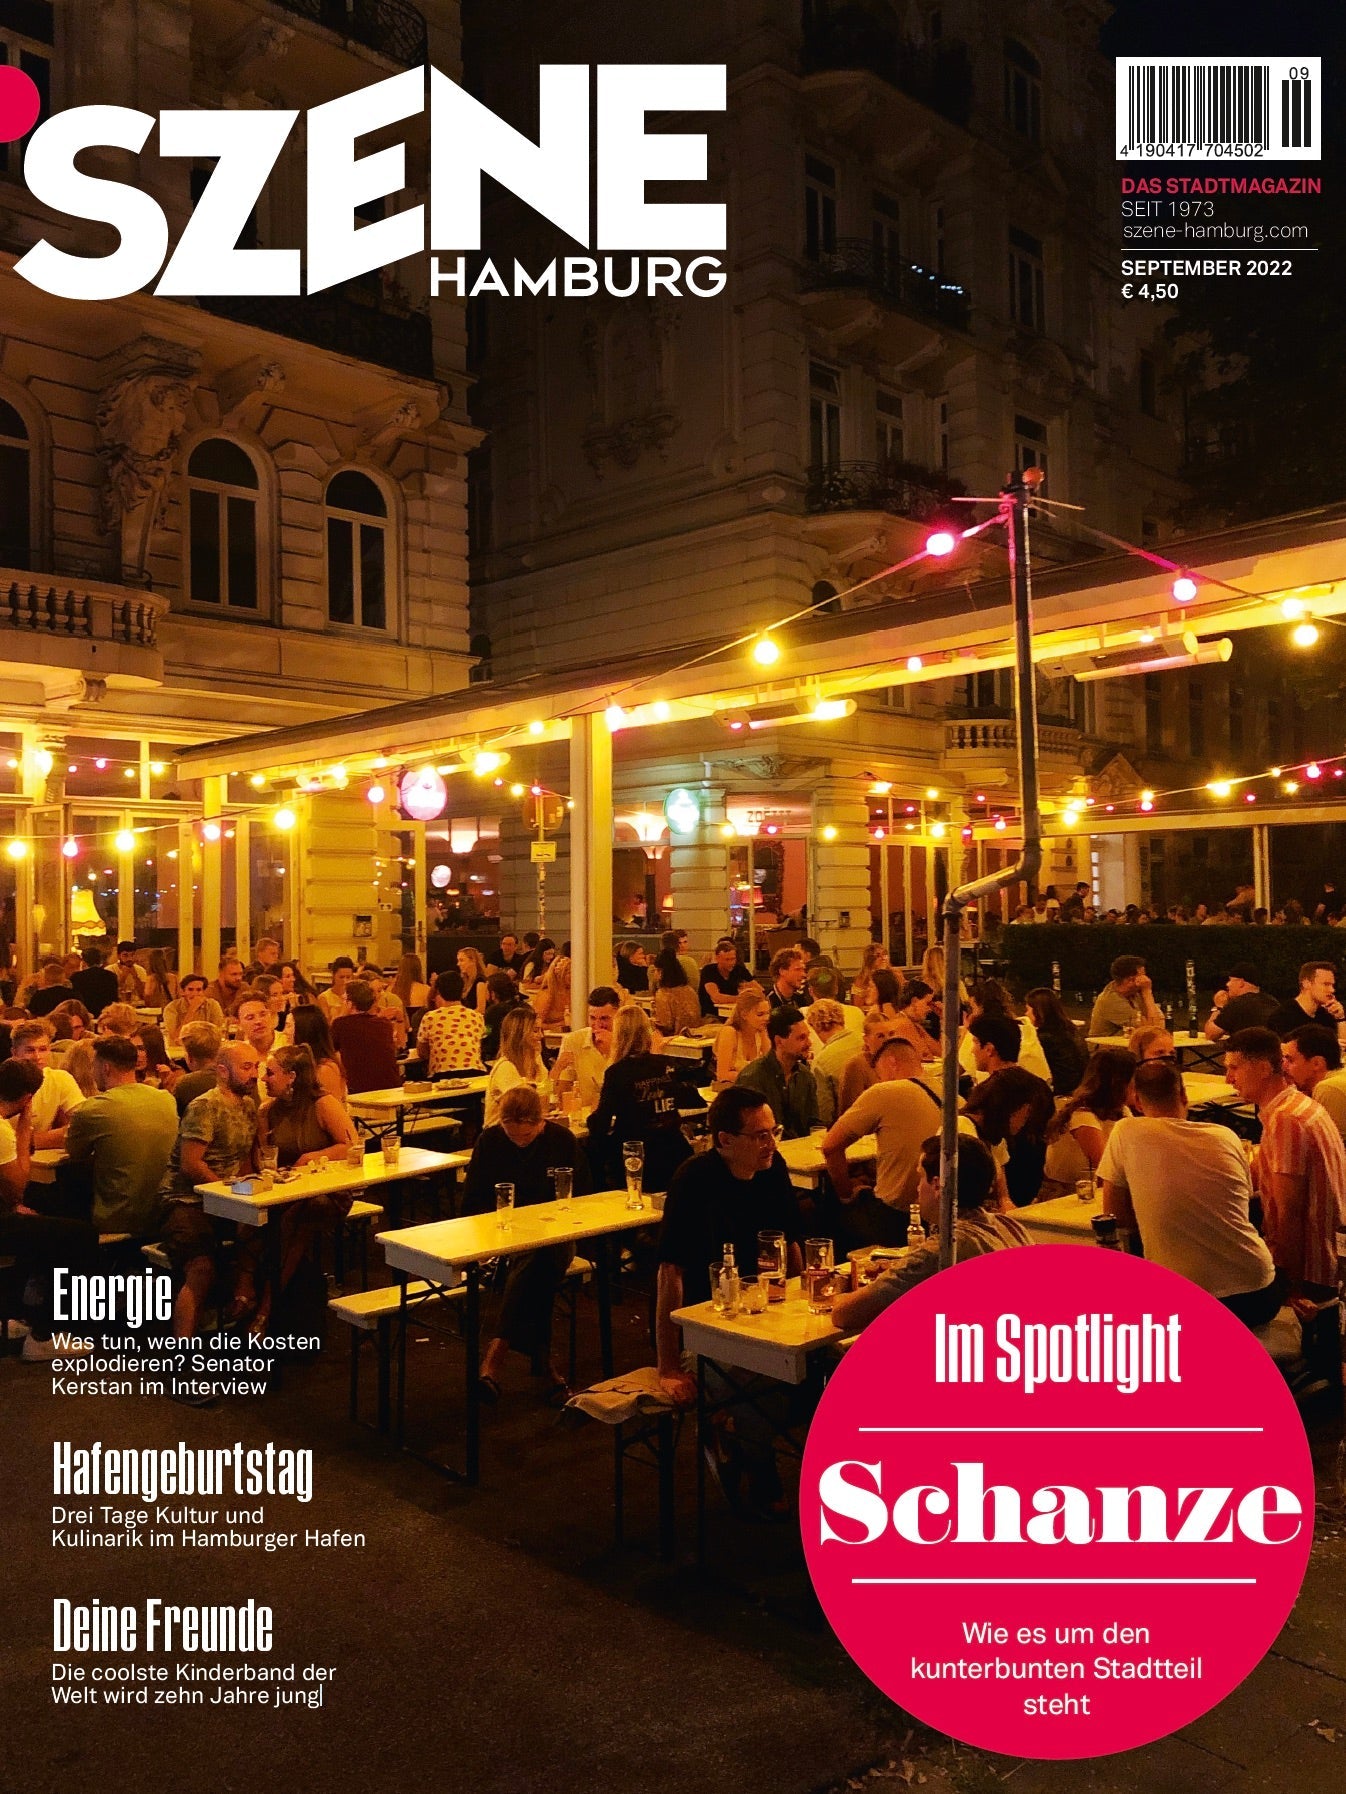 SZENE HAMBURG 09/2022 „Wie es um die Schanze steht“ - SZENE HAMBURG Shop